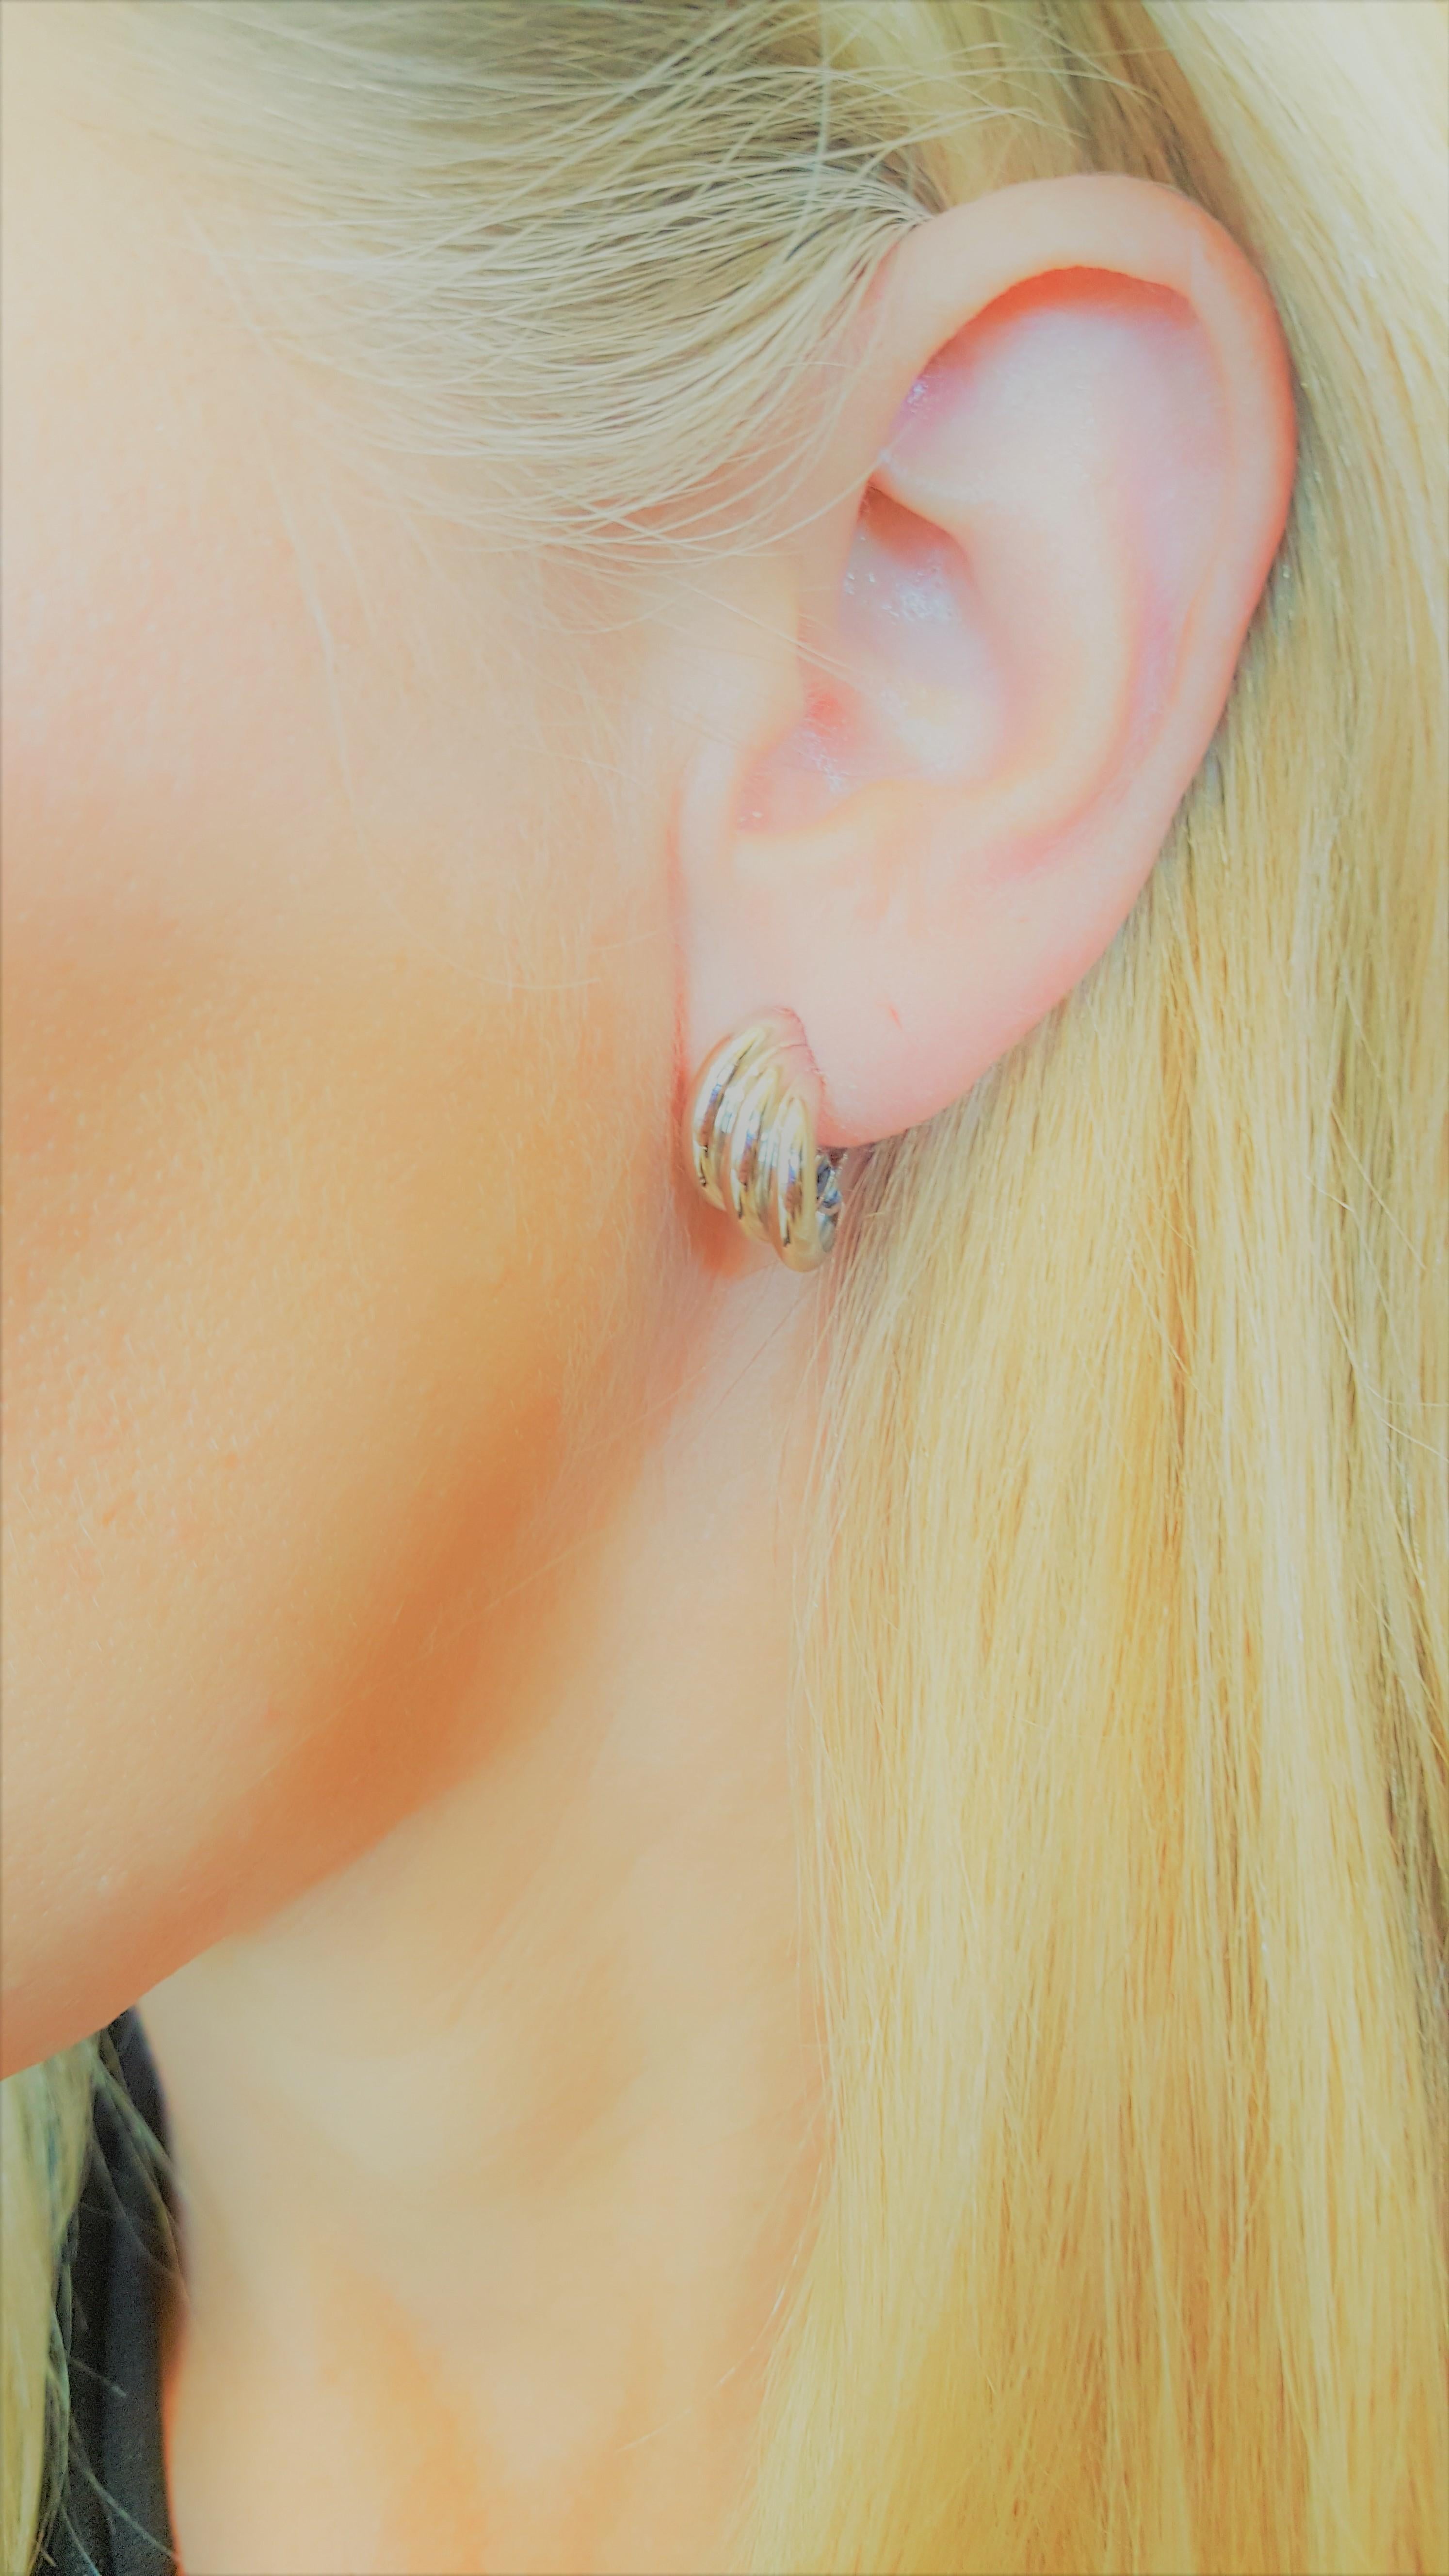 boucles d'oreilles à trois anneaux en or blanc 18 carats, 19 mm de long x 9,2 mm de large, 4,8 grammes, tige de friction avec support en oméga, creux.
De belles boucles d'oreilles, polyvalentes et au design intemporel. Estampillé 750. 4.8